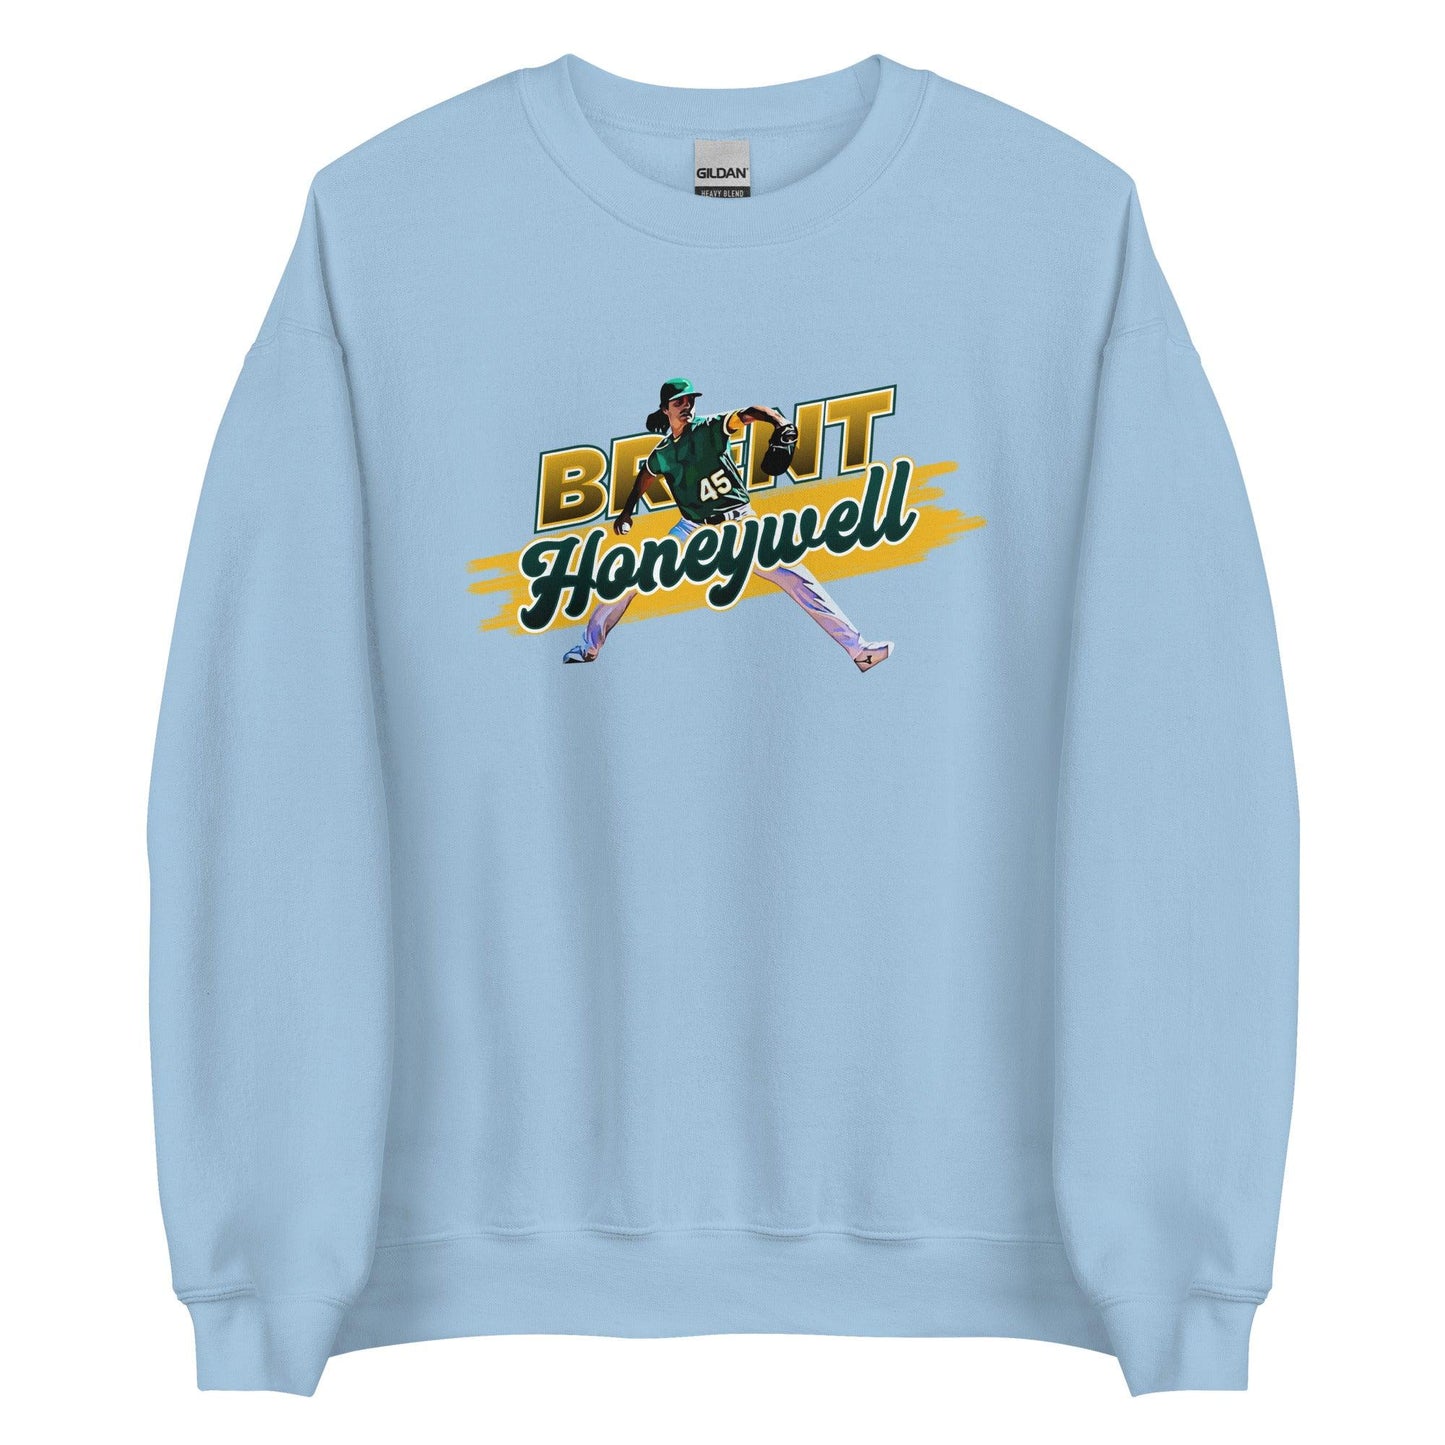 Brent Honeywell "Strike" Sweatshirt - Fan Arch